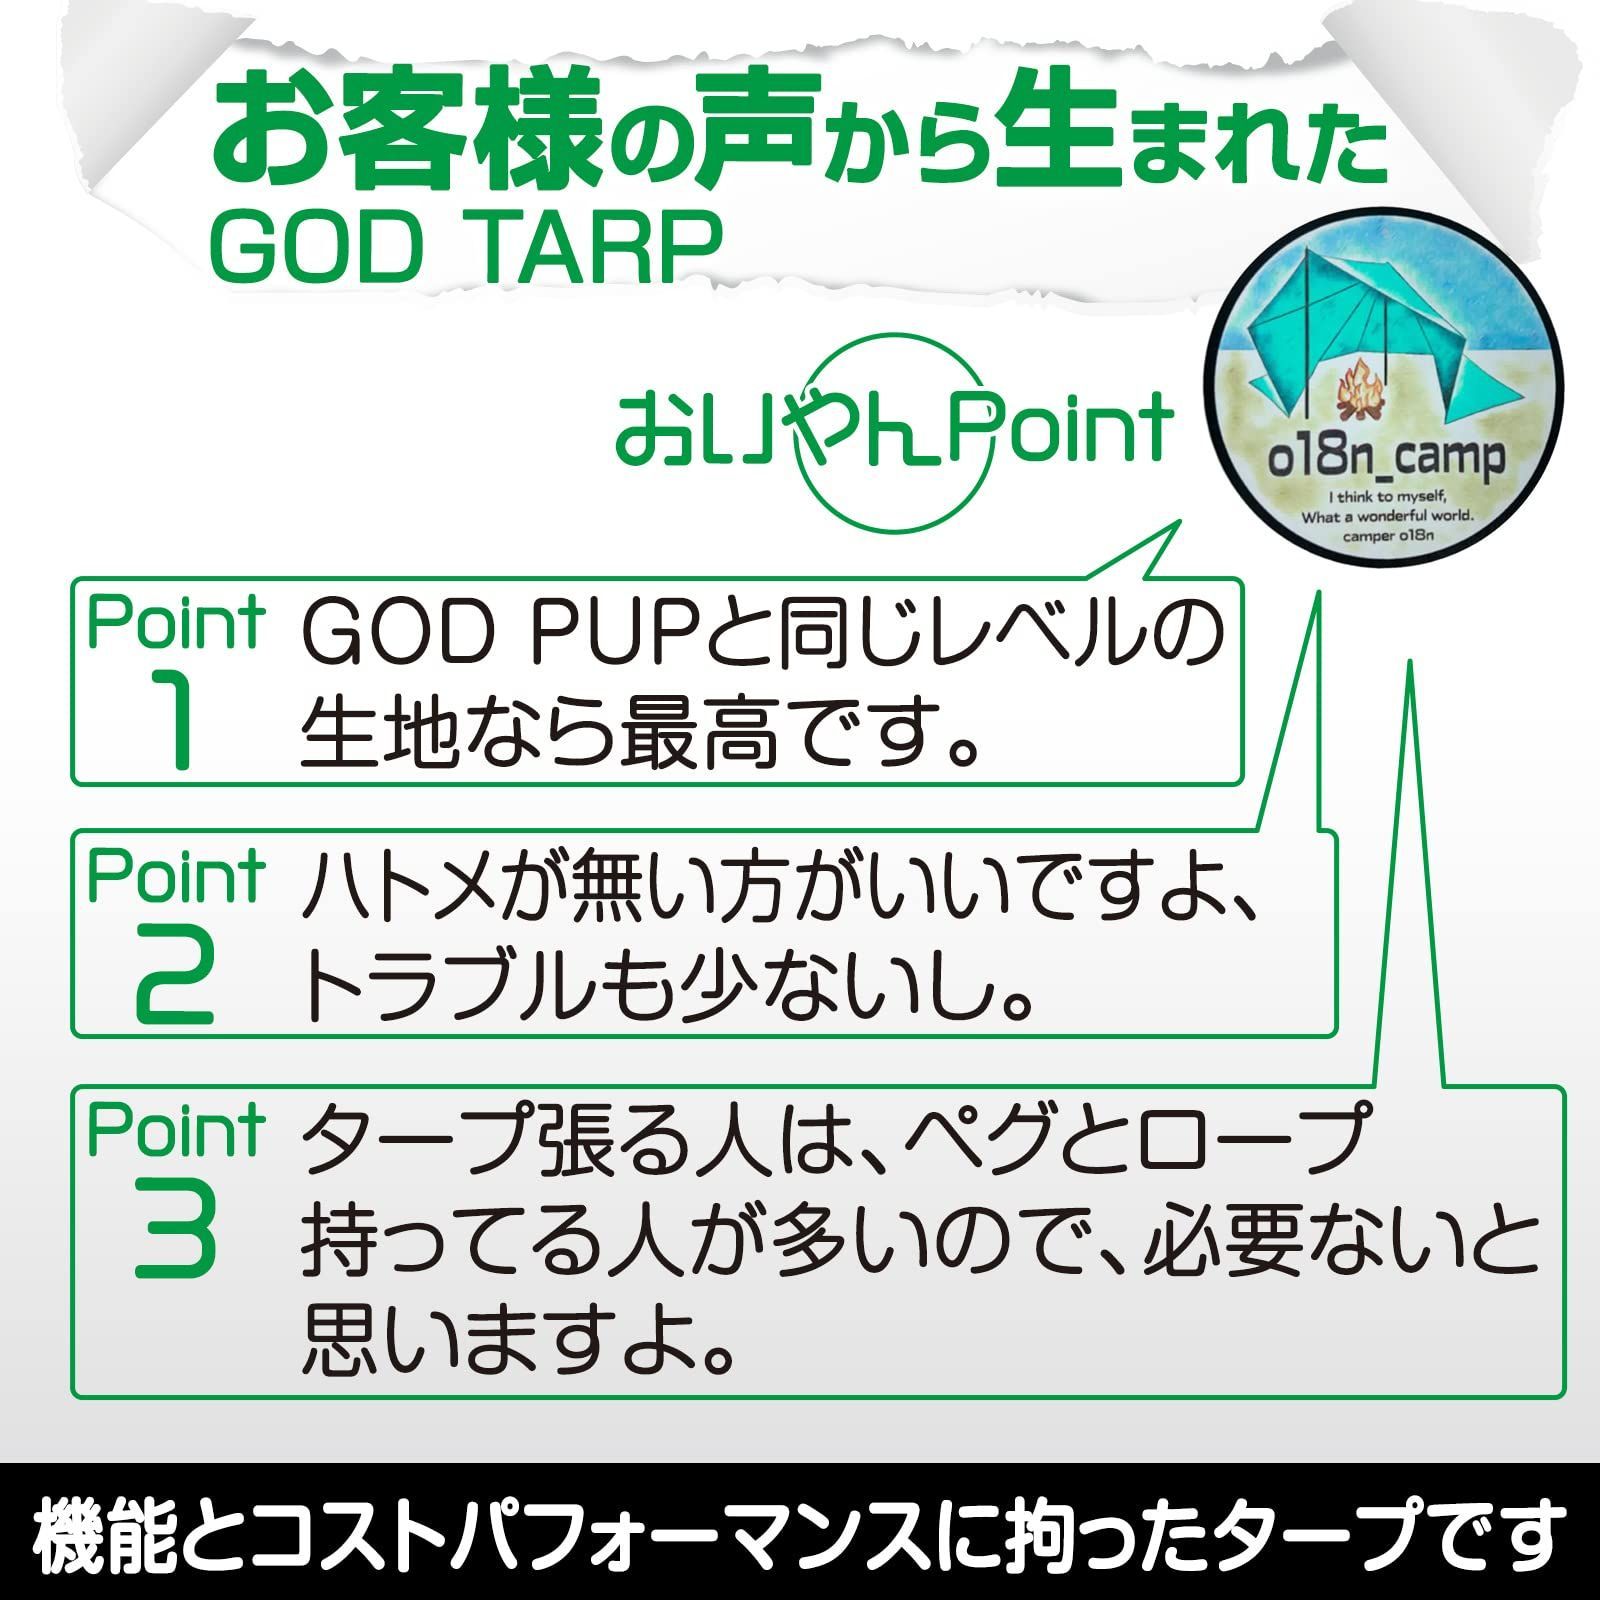 ◇8tail タープ ゴッドタープ 【GOD TARP】4×4m TC素材 正方形タープ